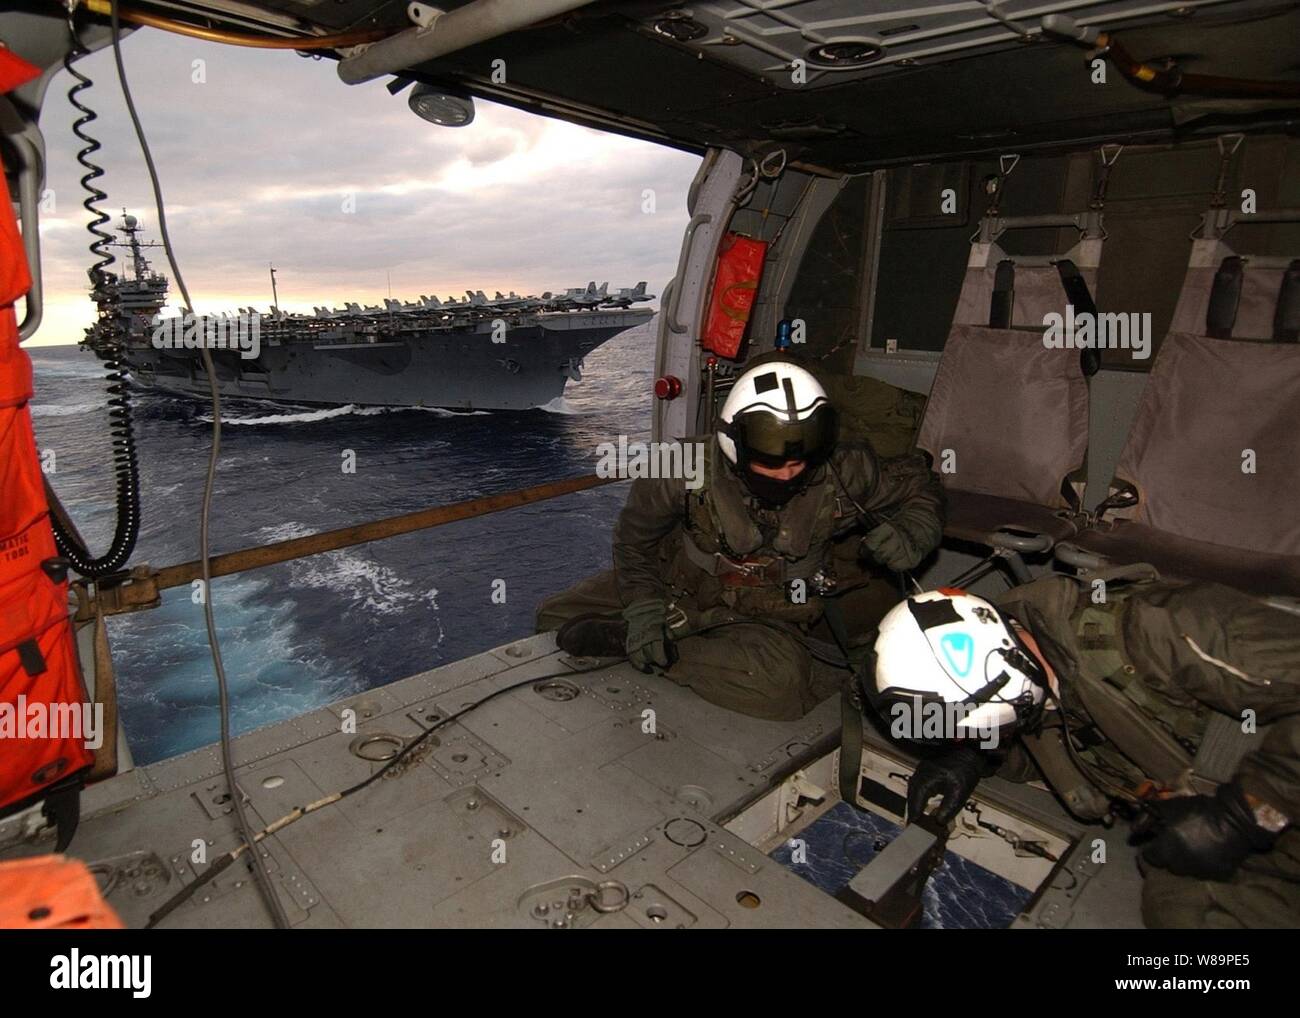 Aircrewmen marine Maître de 2e classe Joseph Broderick et maître de 3e classe Christopher Lovell avoir un œil ci-dessous comme une palette cargo est attaché à l'hameçon de leur hélicoptère MH-60S Knighthawk lors d'une opération de ravitaillement vertical dans l'Océan Atlantique le 6 décembre 2004. La Knighthawk est déployé à bord du USS Seattle (AOE 3) à partir d'hélicoptères de l'Escadron de soutien au combat 8. Le Seattle est un navire de soutien de combat rapide qui fournit un appui logistique à l'USS John F. Kennedy (CV 67) Groupe aéronaval. Broderick est un machiniste de l'aviation de la Marine et l'aviation une Lovell elec Banque D'Images